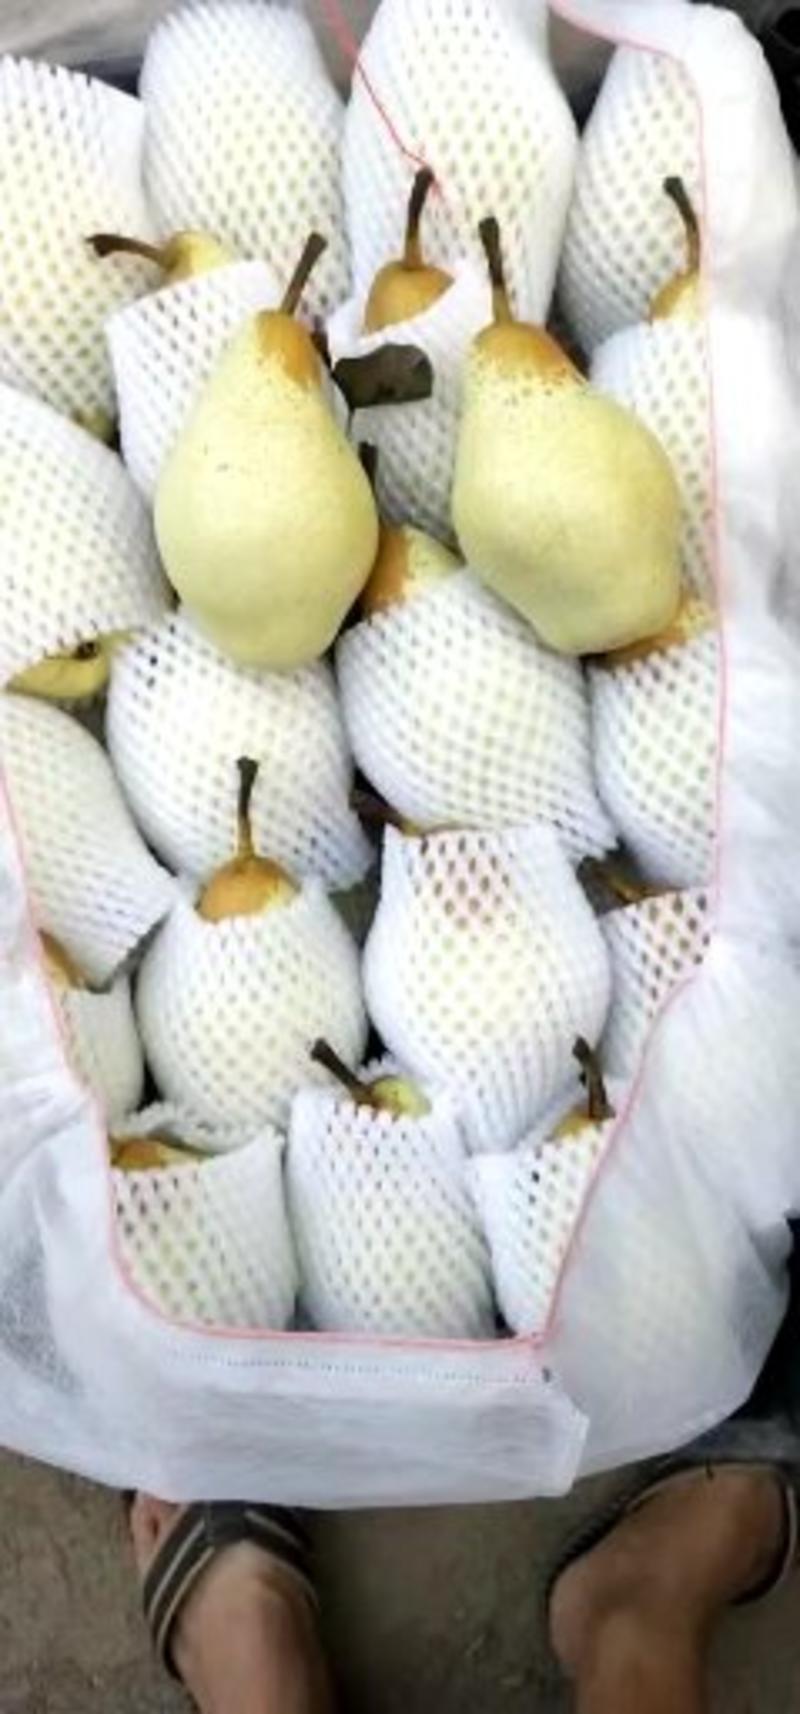 【梨】河北贵妃梨清甜酥脆应季新鲜水果全国发货